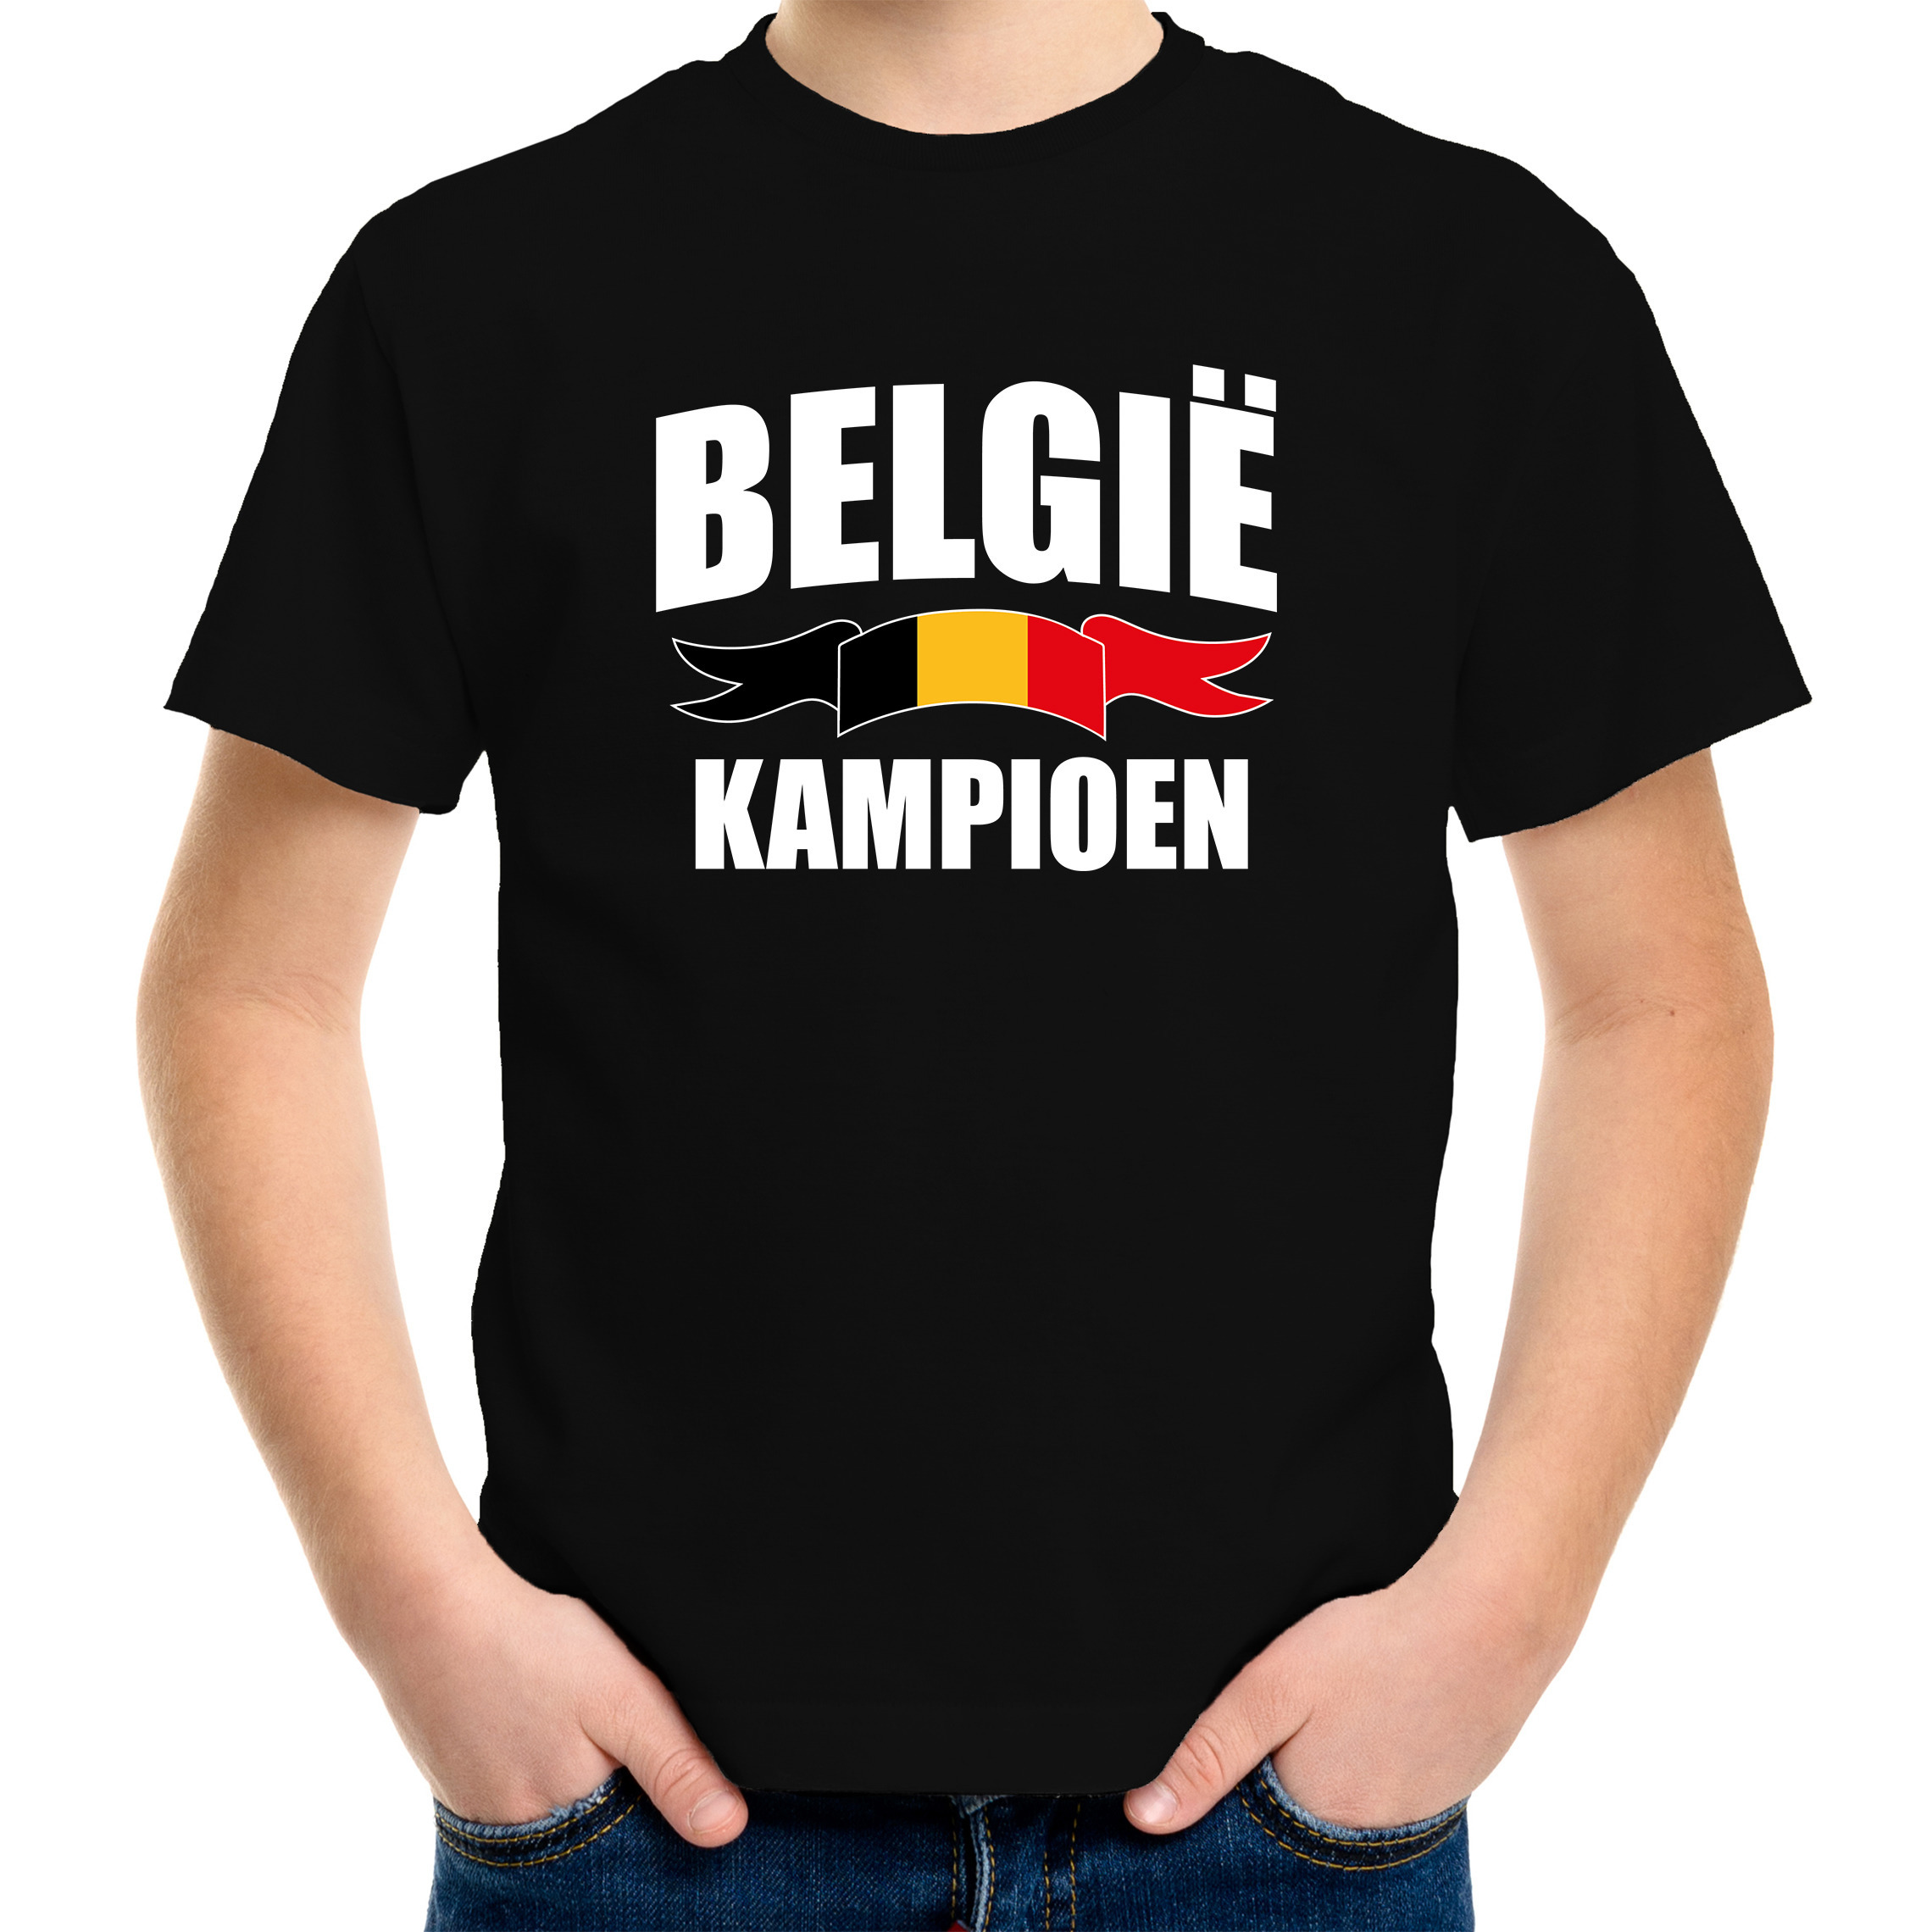 Belgie kampioen supporter t-shirt zwart EK/ WK voor kinderen